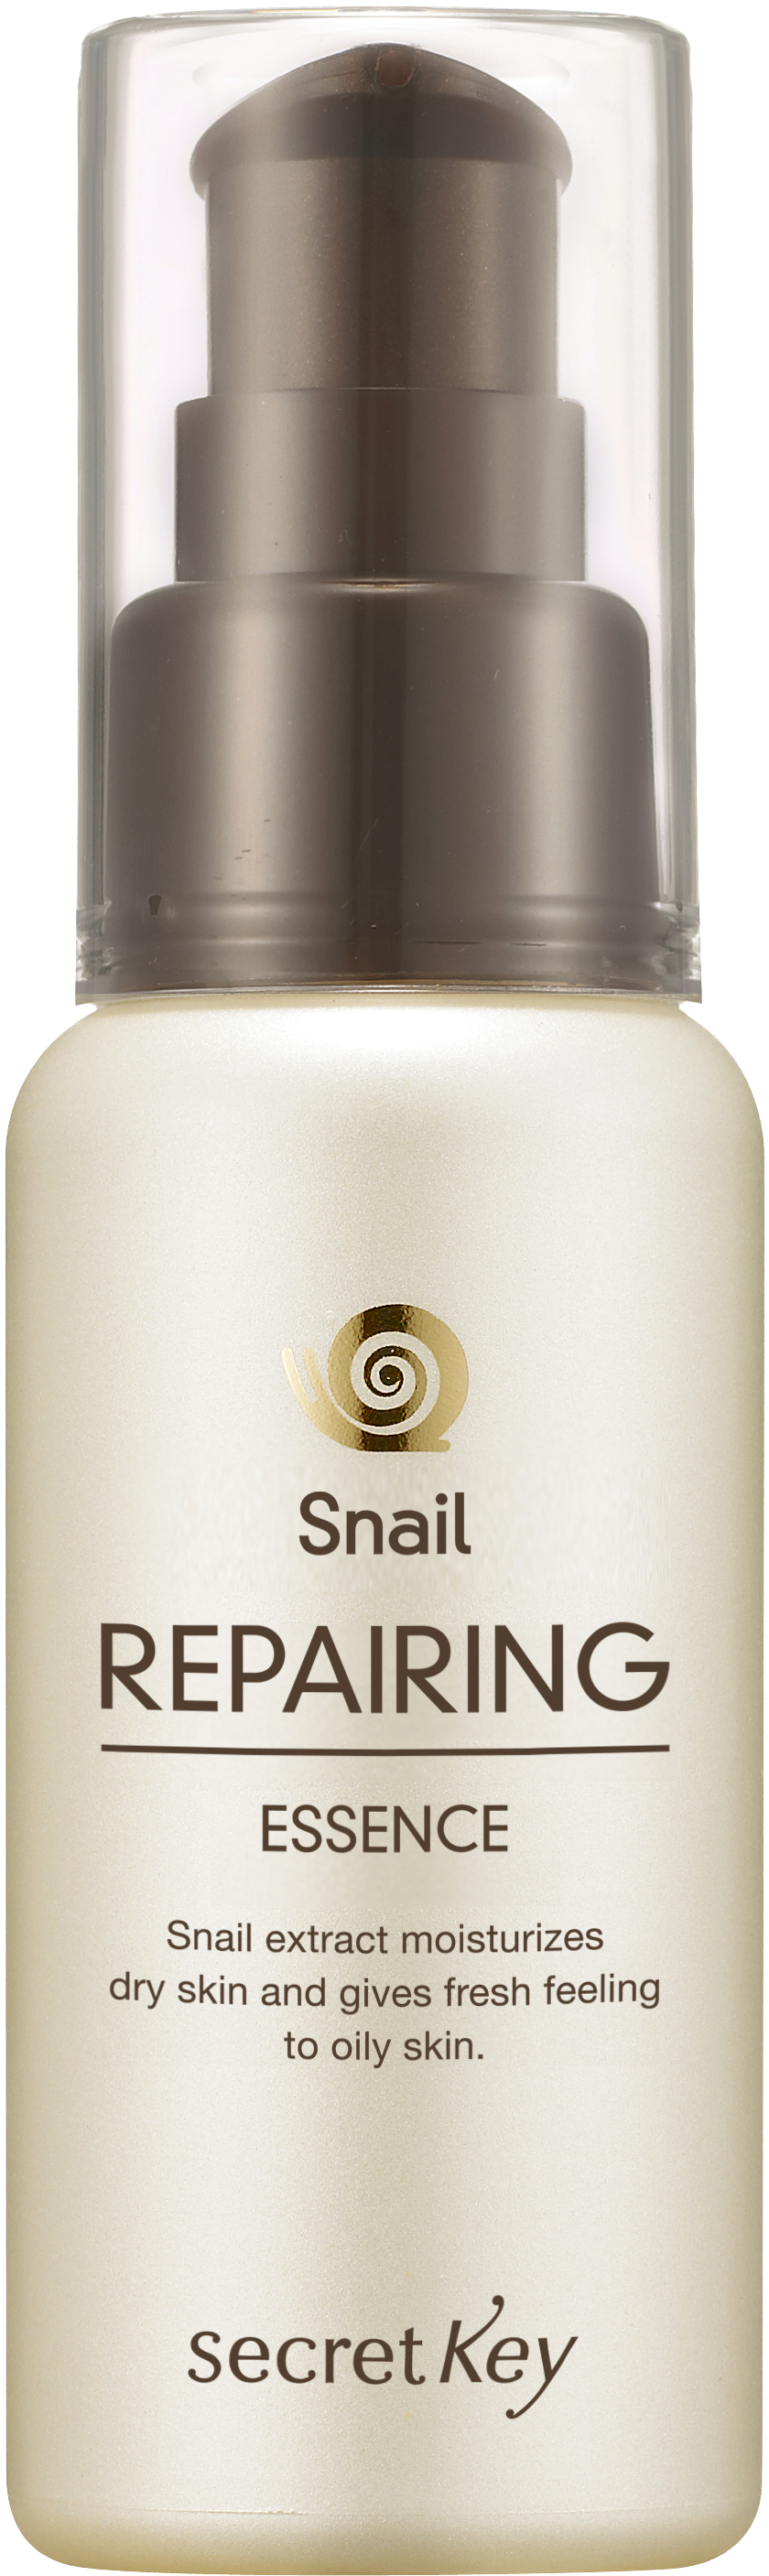 Эссенция для лица воостанавливающая с экстрактом слизи улитки Snail Repairing Essence, 50мл Secret Key